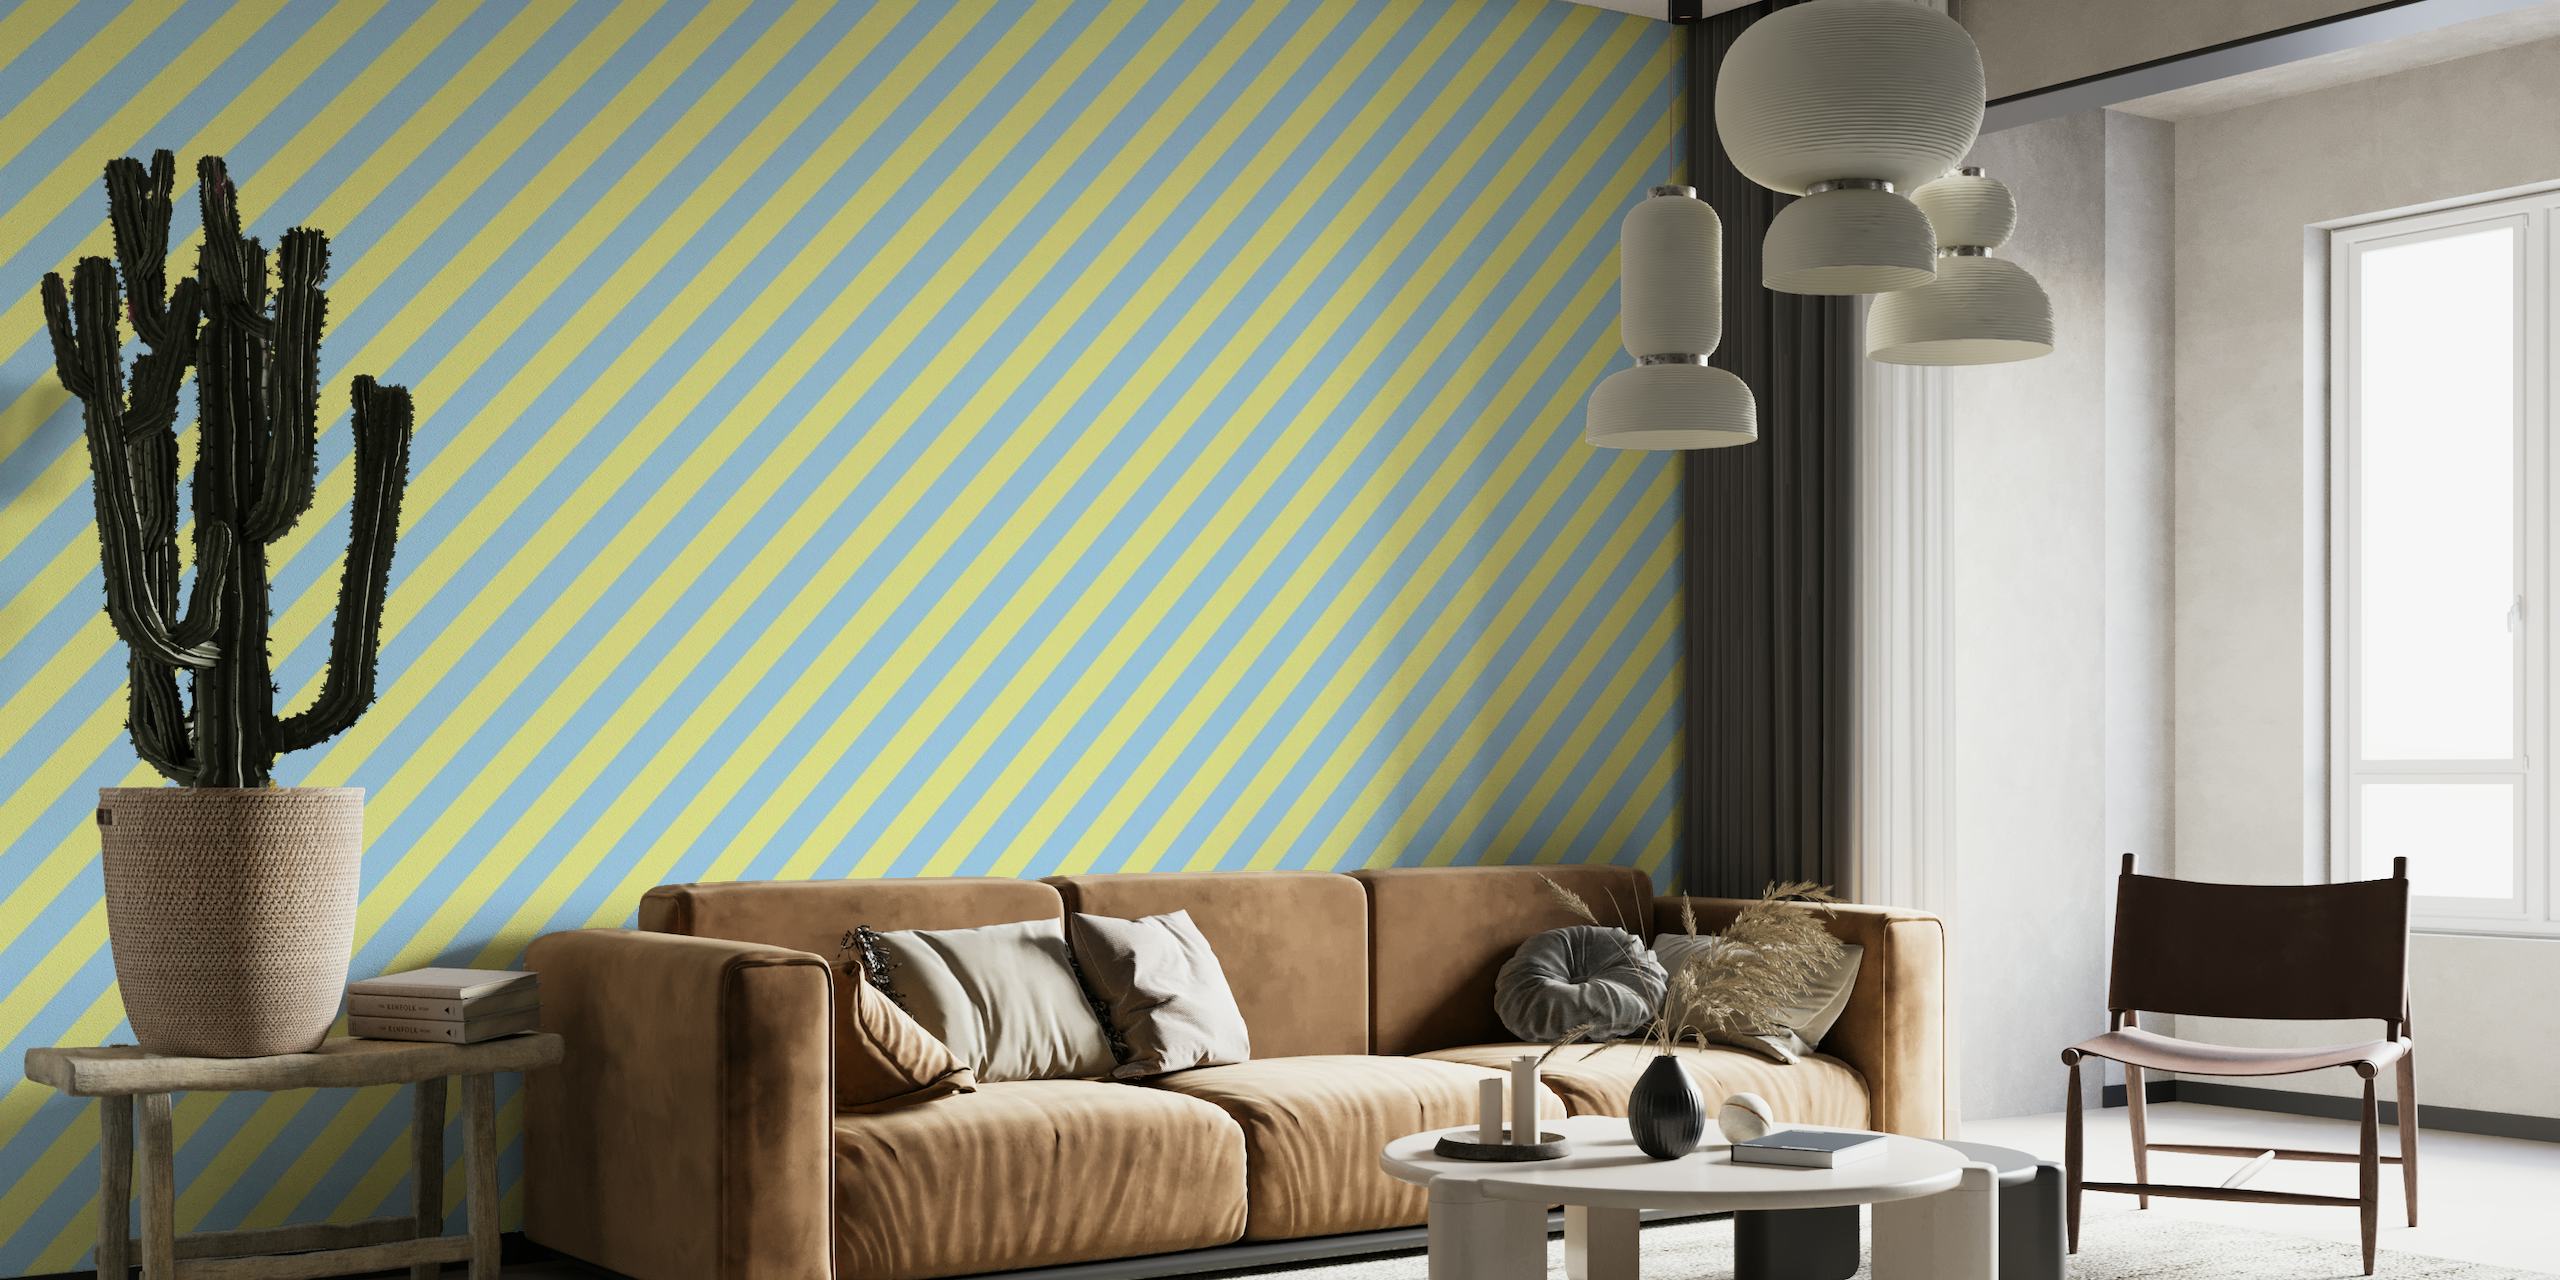 Blå og gul diagonal stribet vægmaleri, der skaber en fed og levende baggrund